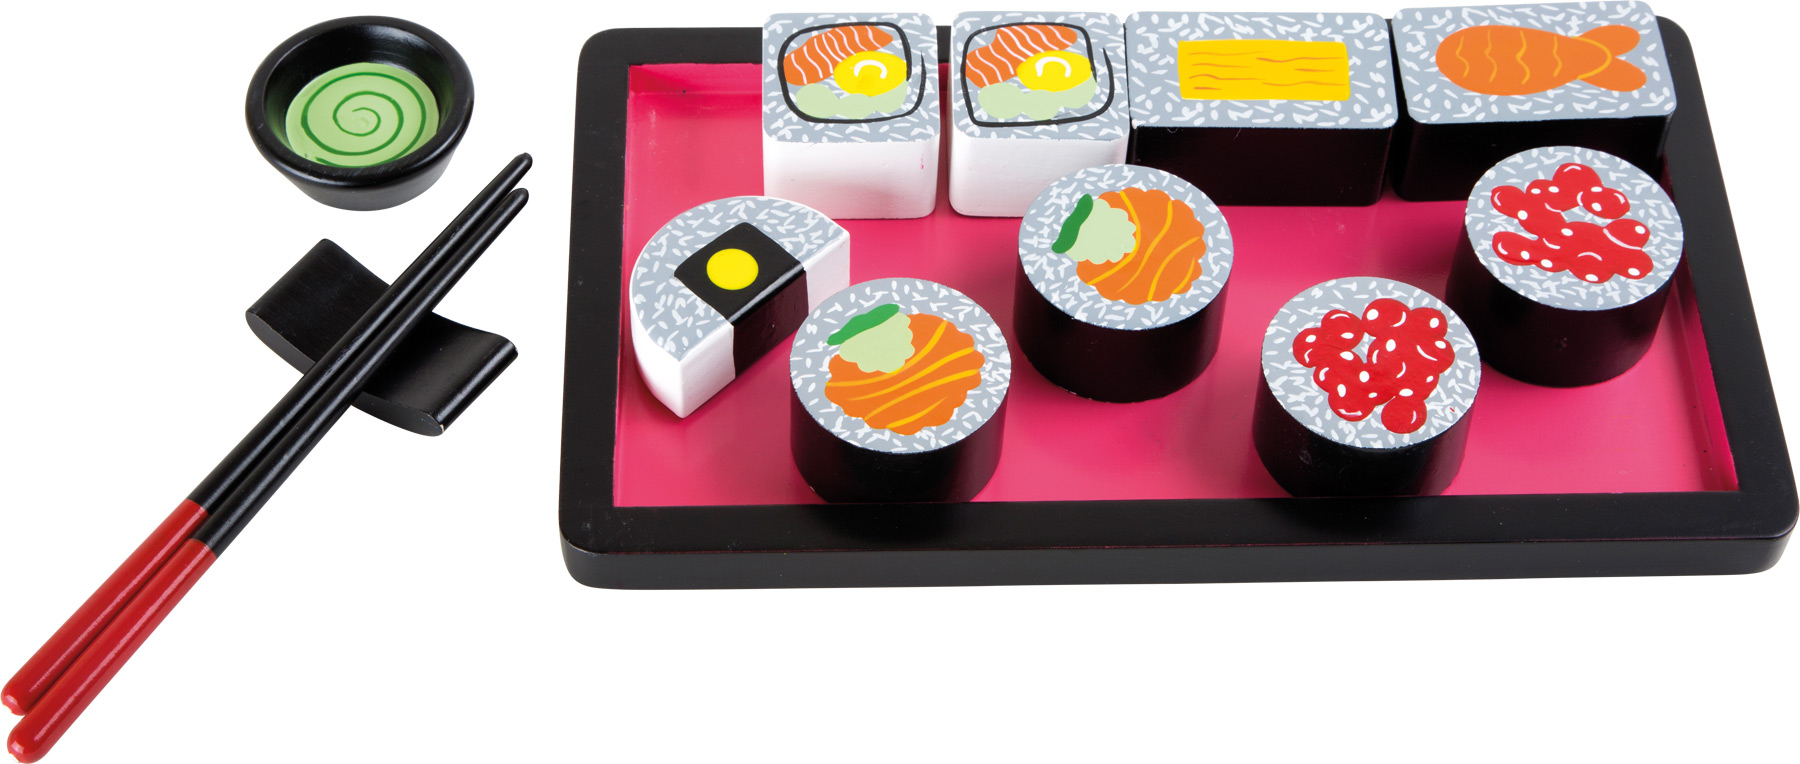 Small Foot Sushi set